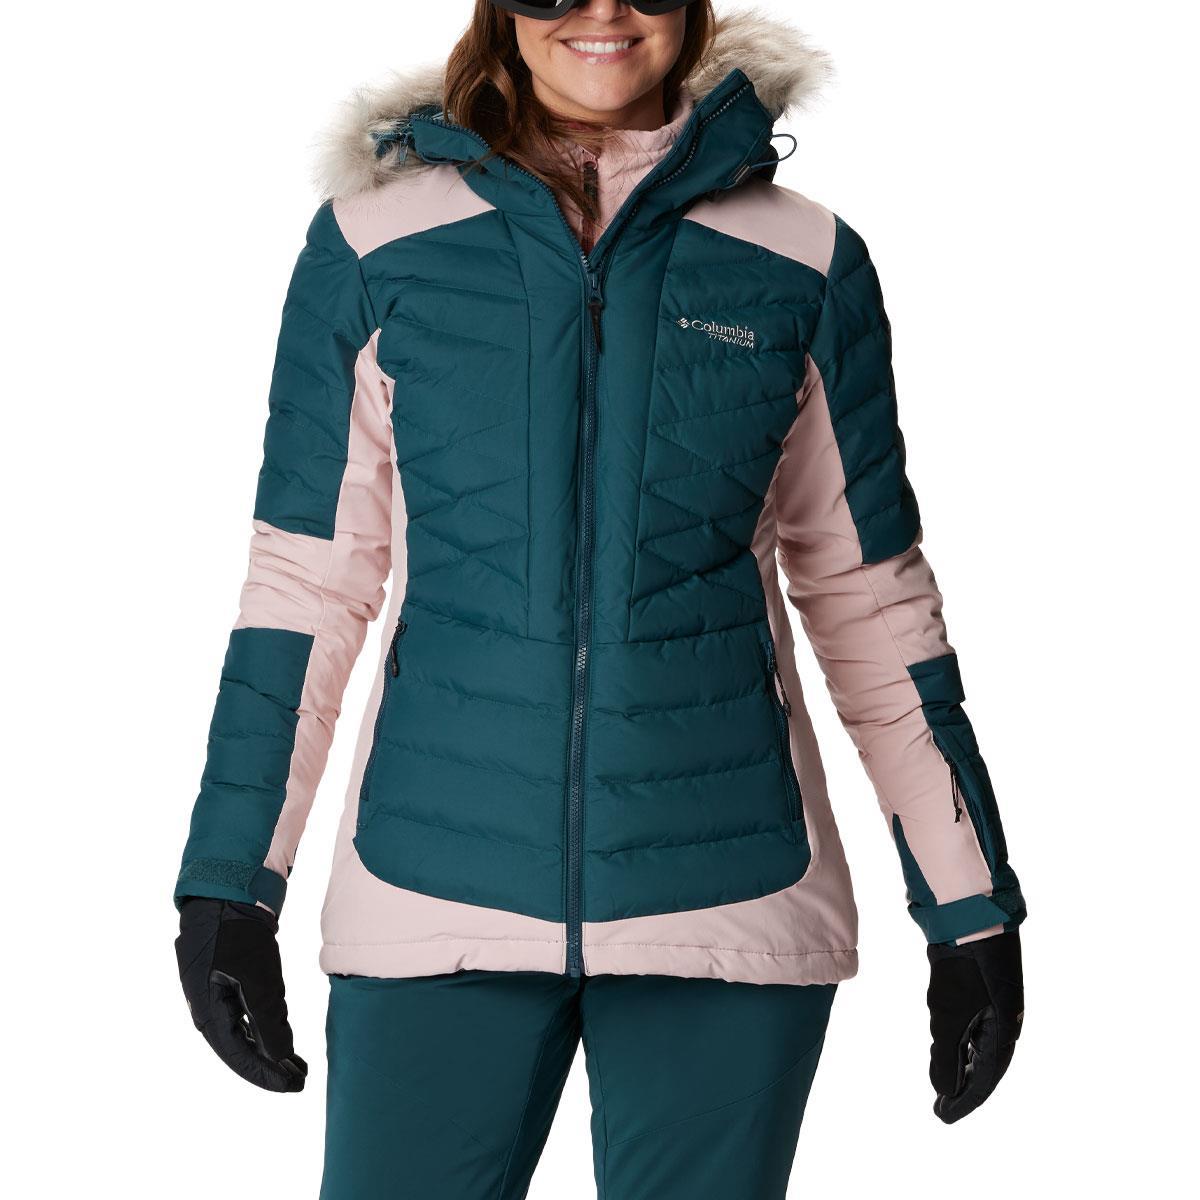 Columbia Sportswear Women’s Ski Lined Jacket 2 in1 Jacket hood RN 69724